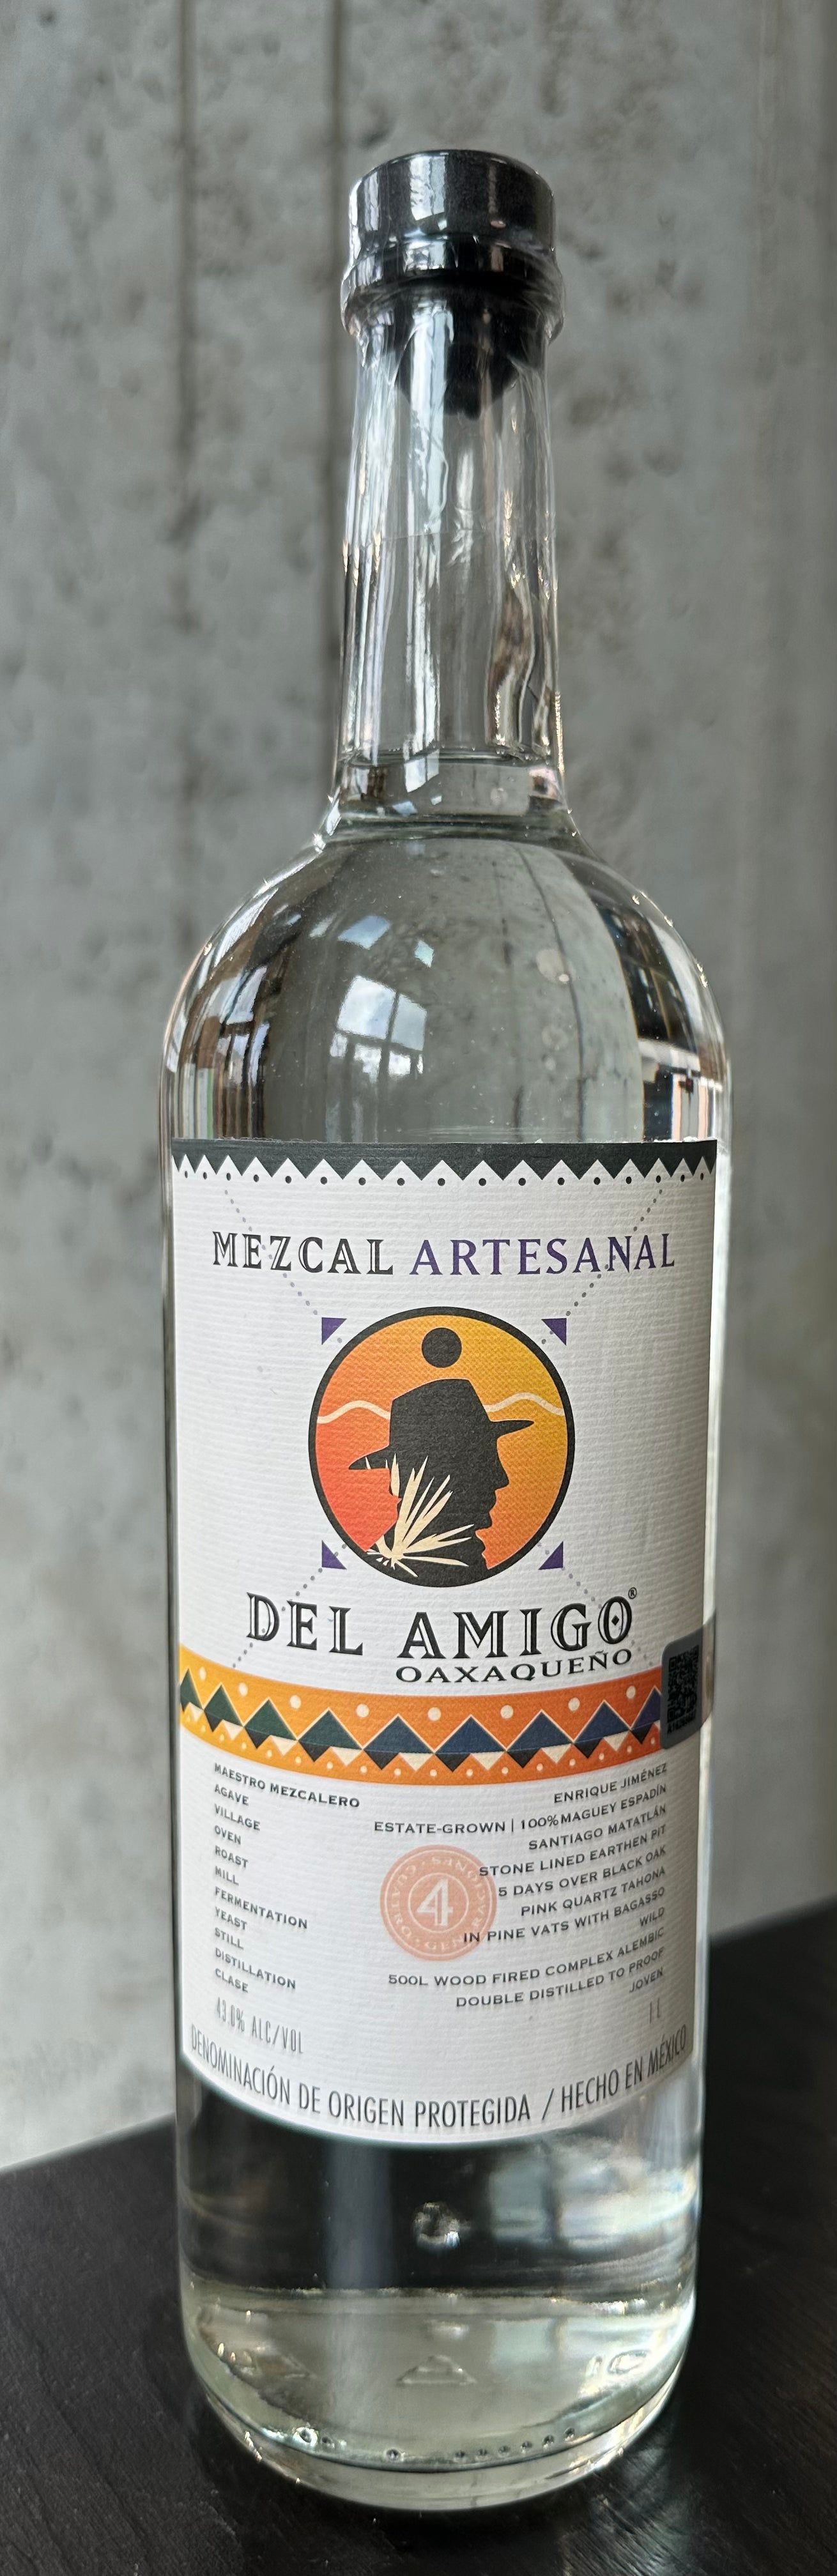 Del Amigo Mezcal Artesanal (1 Liter)